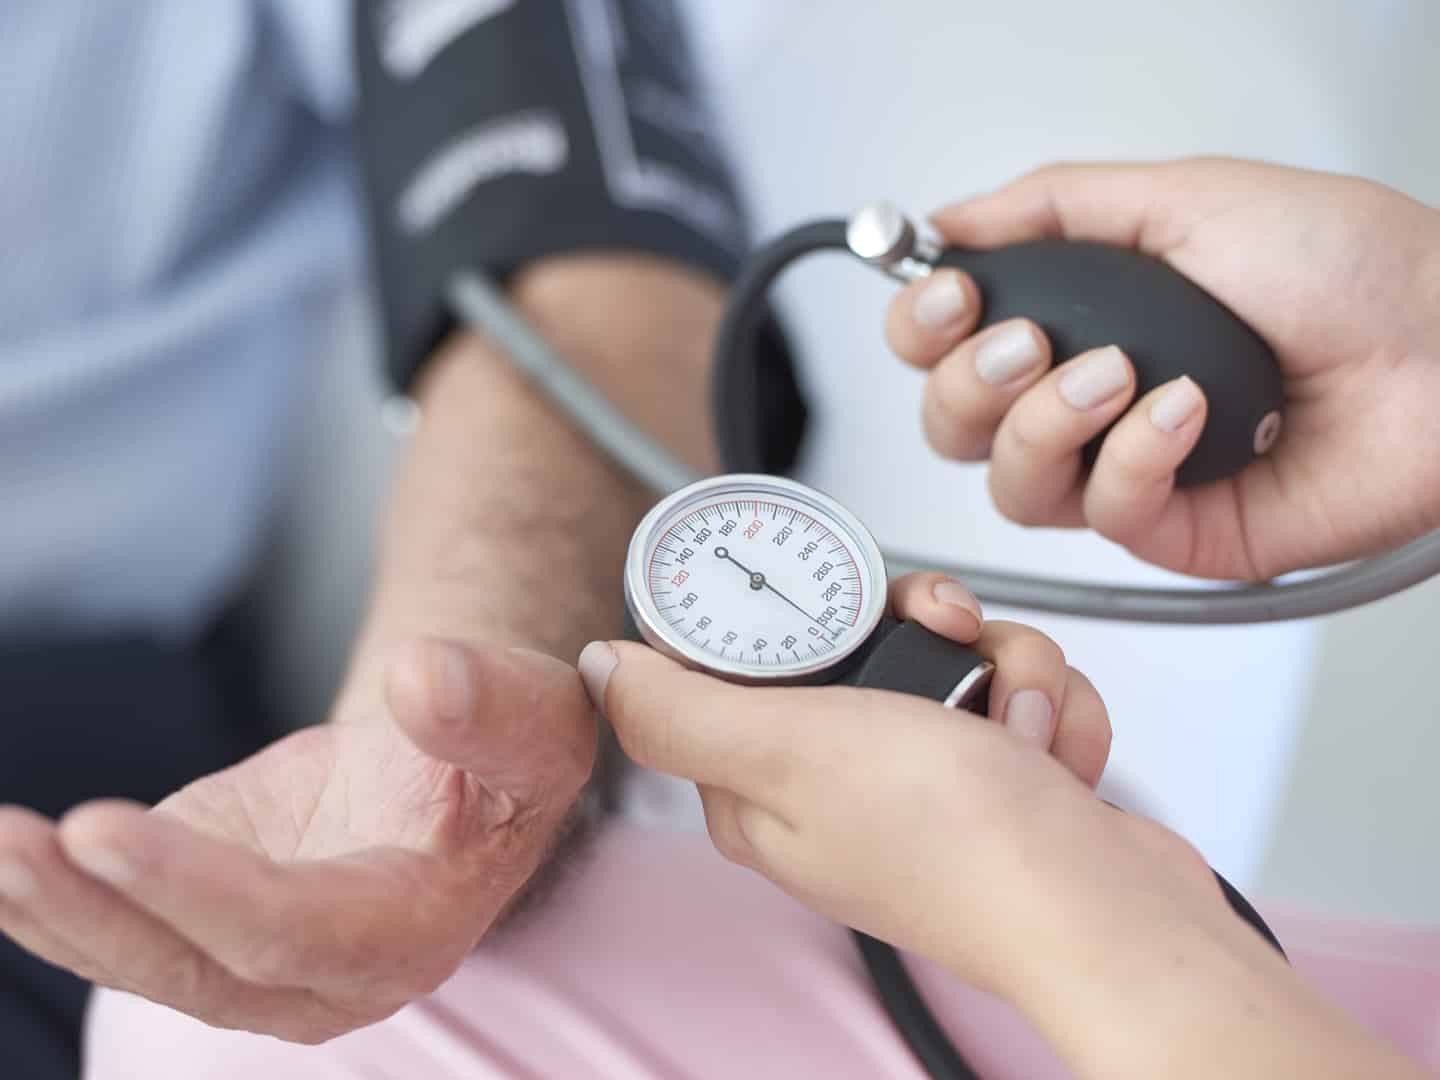 Tăng huyết áp là một trong những yếu tố nguy cơ phổ biến có thể dẫn đến sa sút trí tuệ do mạch máu